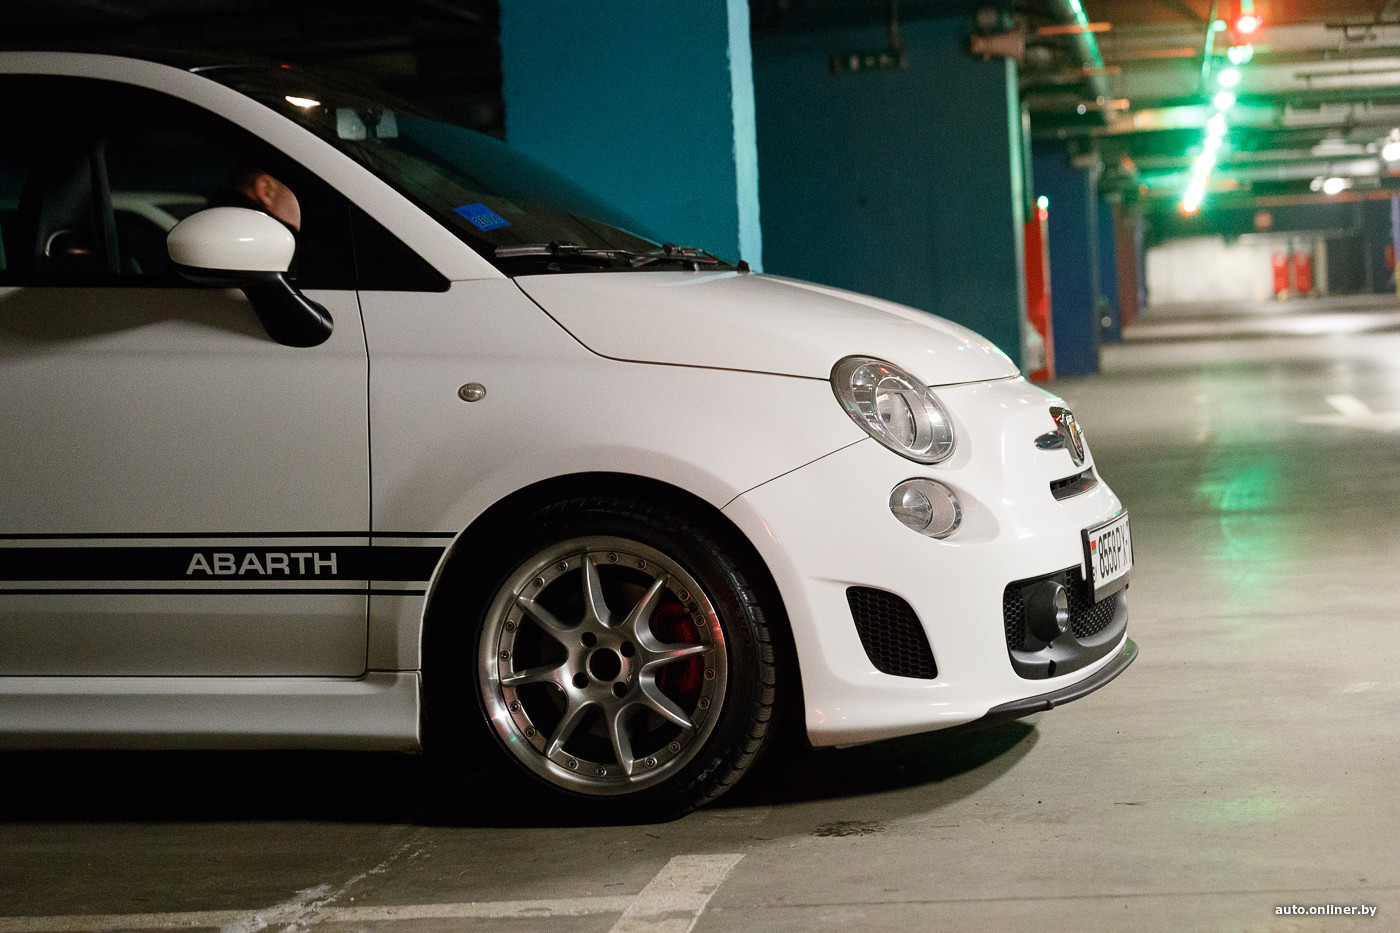 Ожидаемая премьера Fiat Abarth 500 Auto на автосалоне в Нью-Йорке 2015